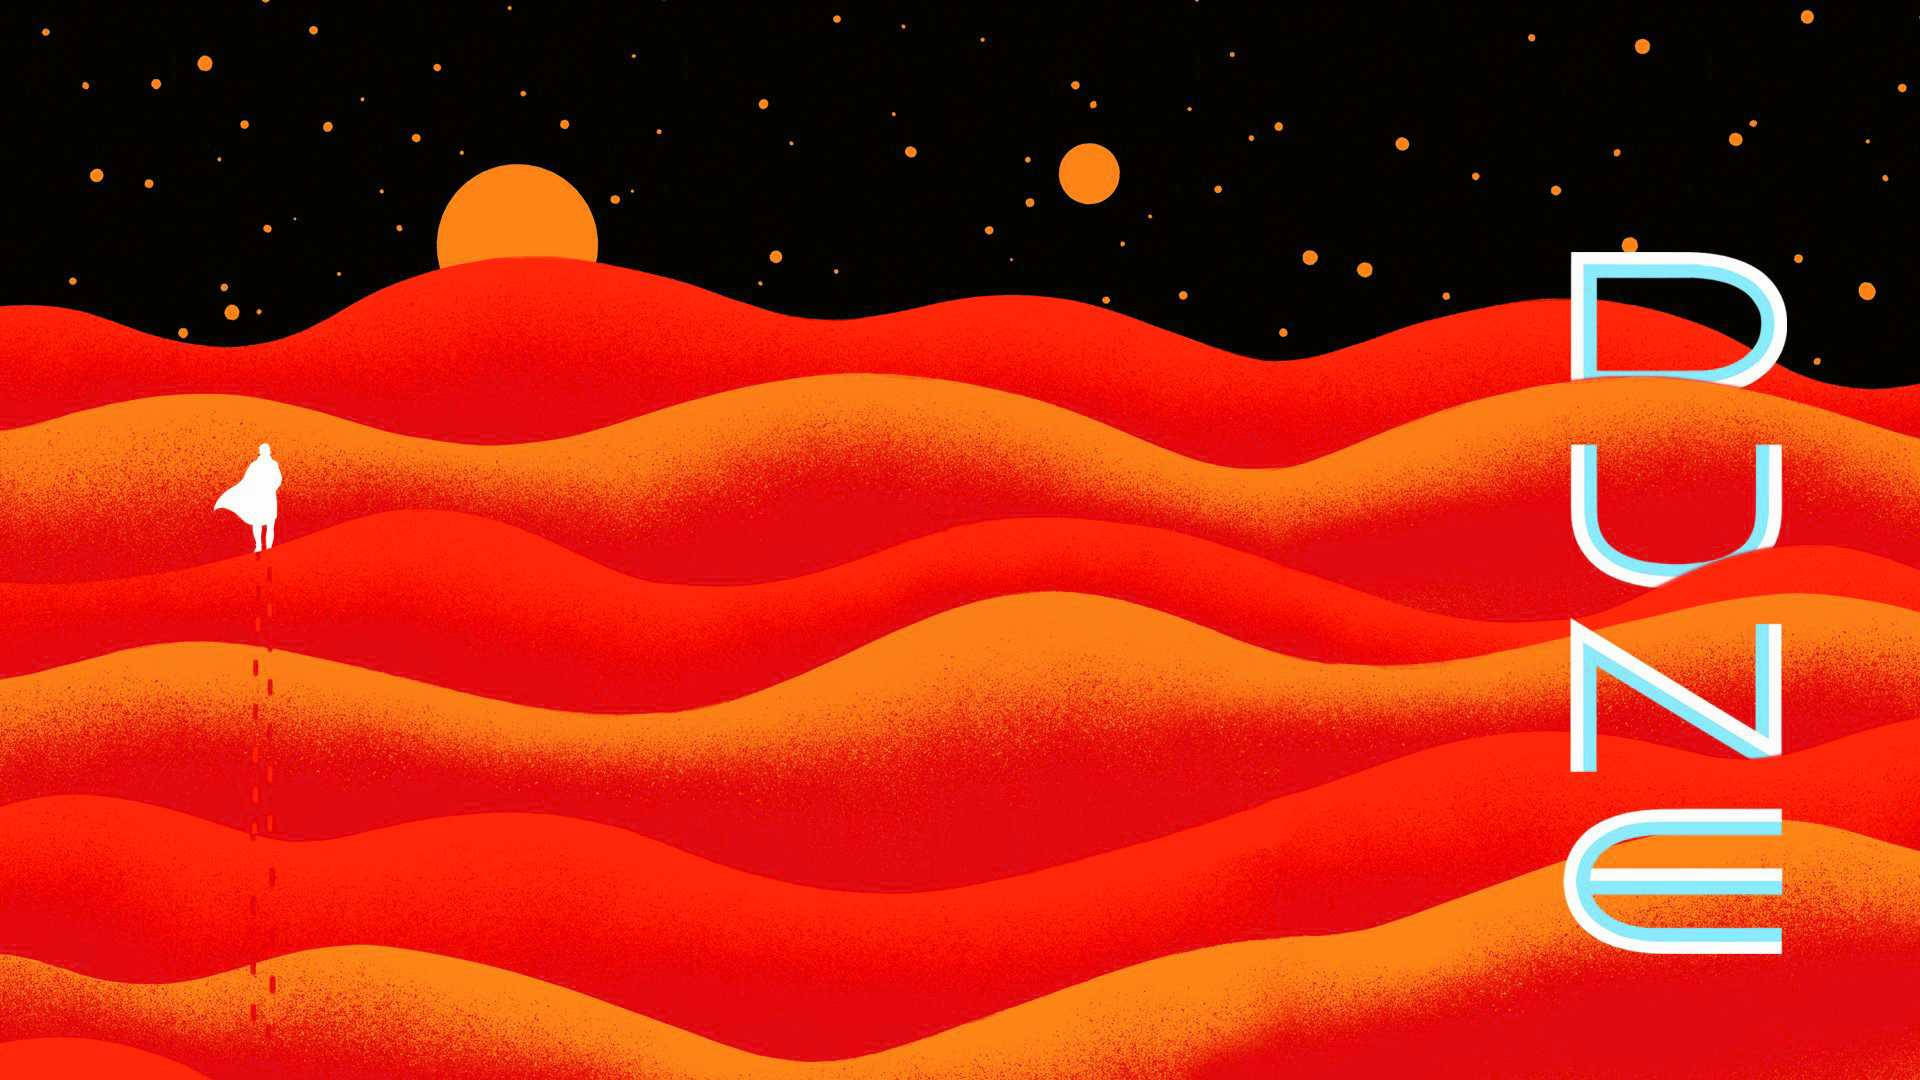 Dune 2021graphic Art Background